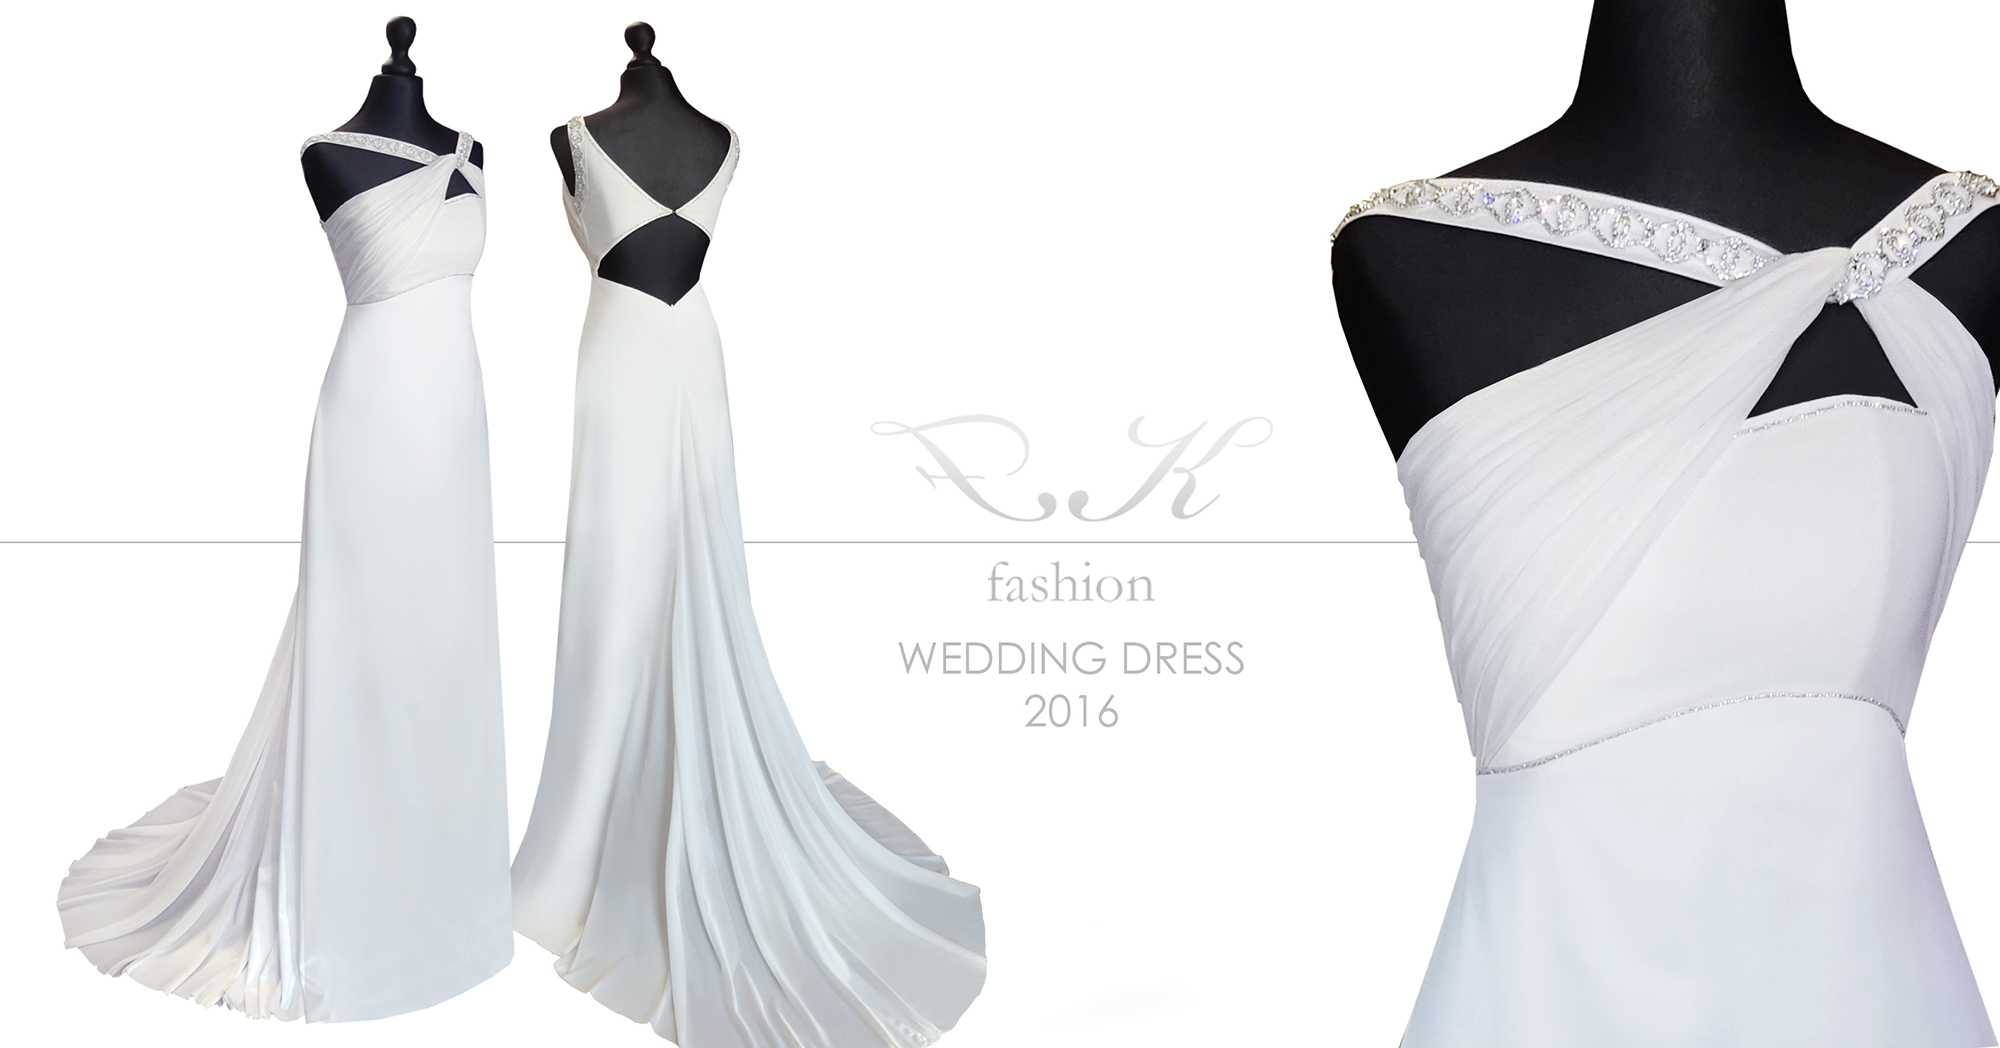 Aszimmetrikus menyasszonyi ruha, nyitott háttal - Zsófi álomruhája